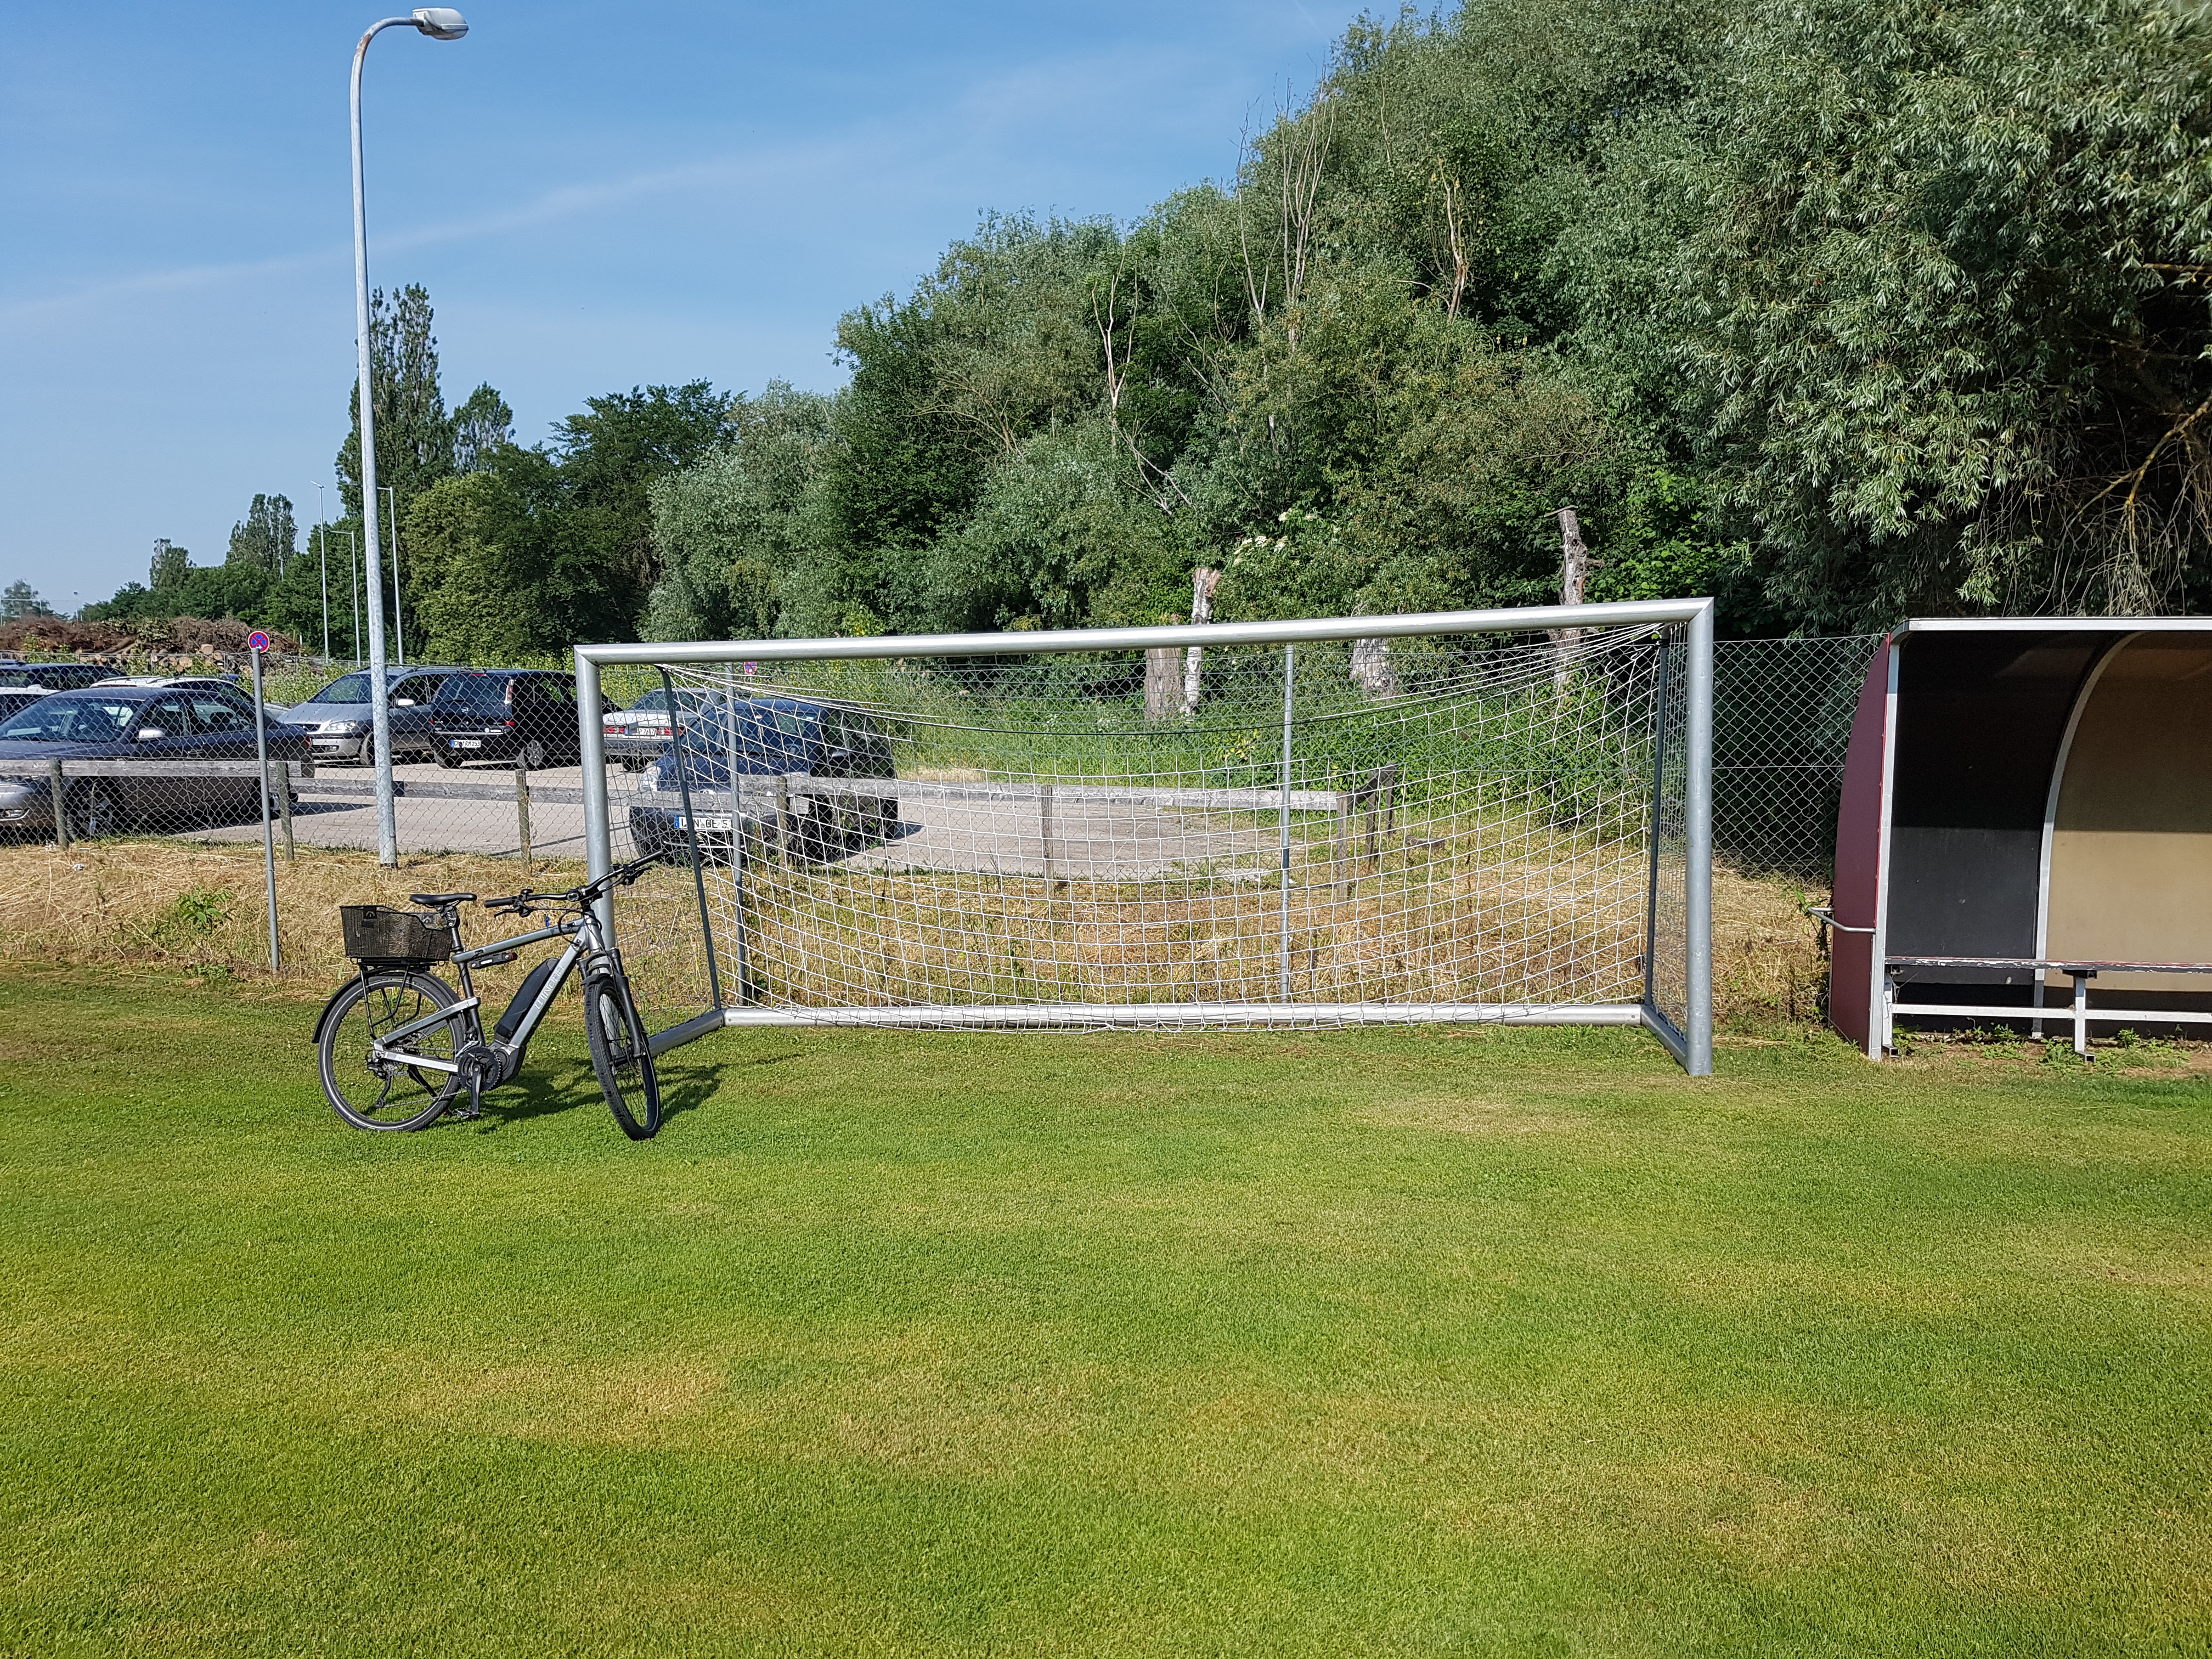 Das Bild zeigt einen Rasenplatz mit Tor und Trainerbank. Am Fußballtor lehnt ein Fahrrad.